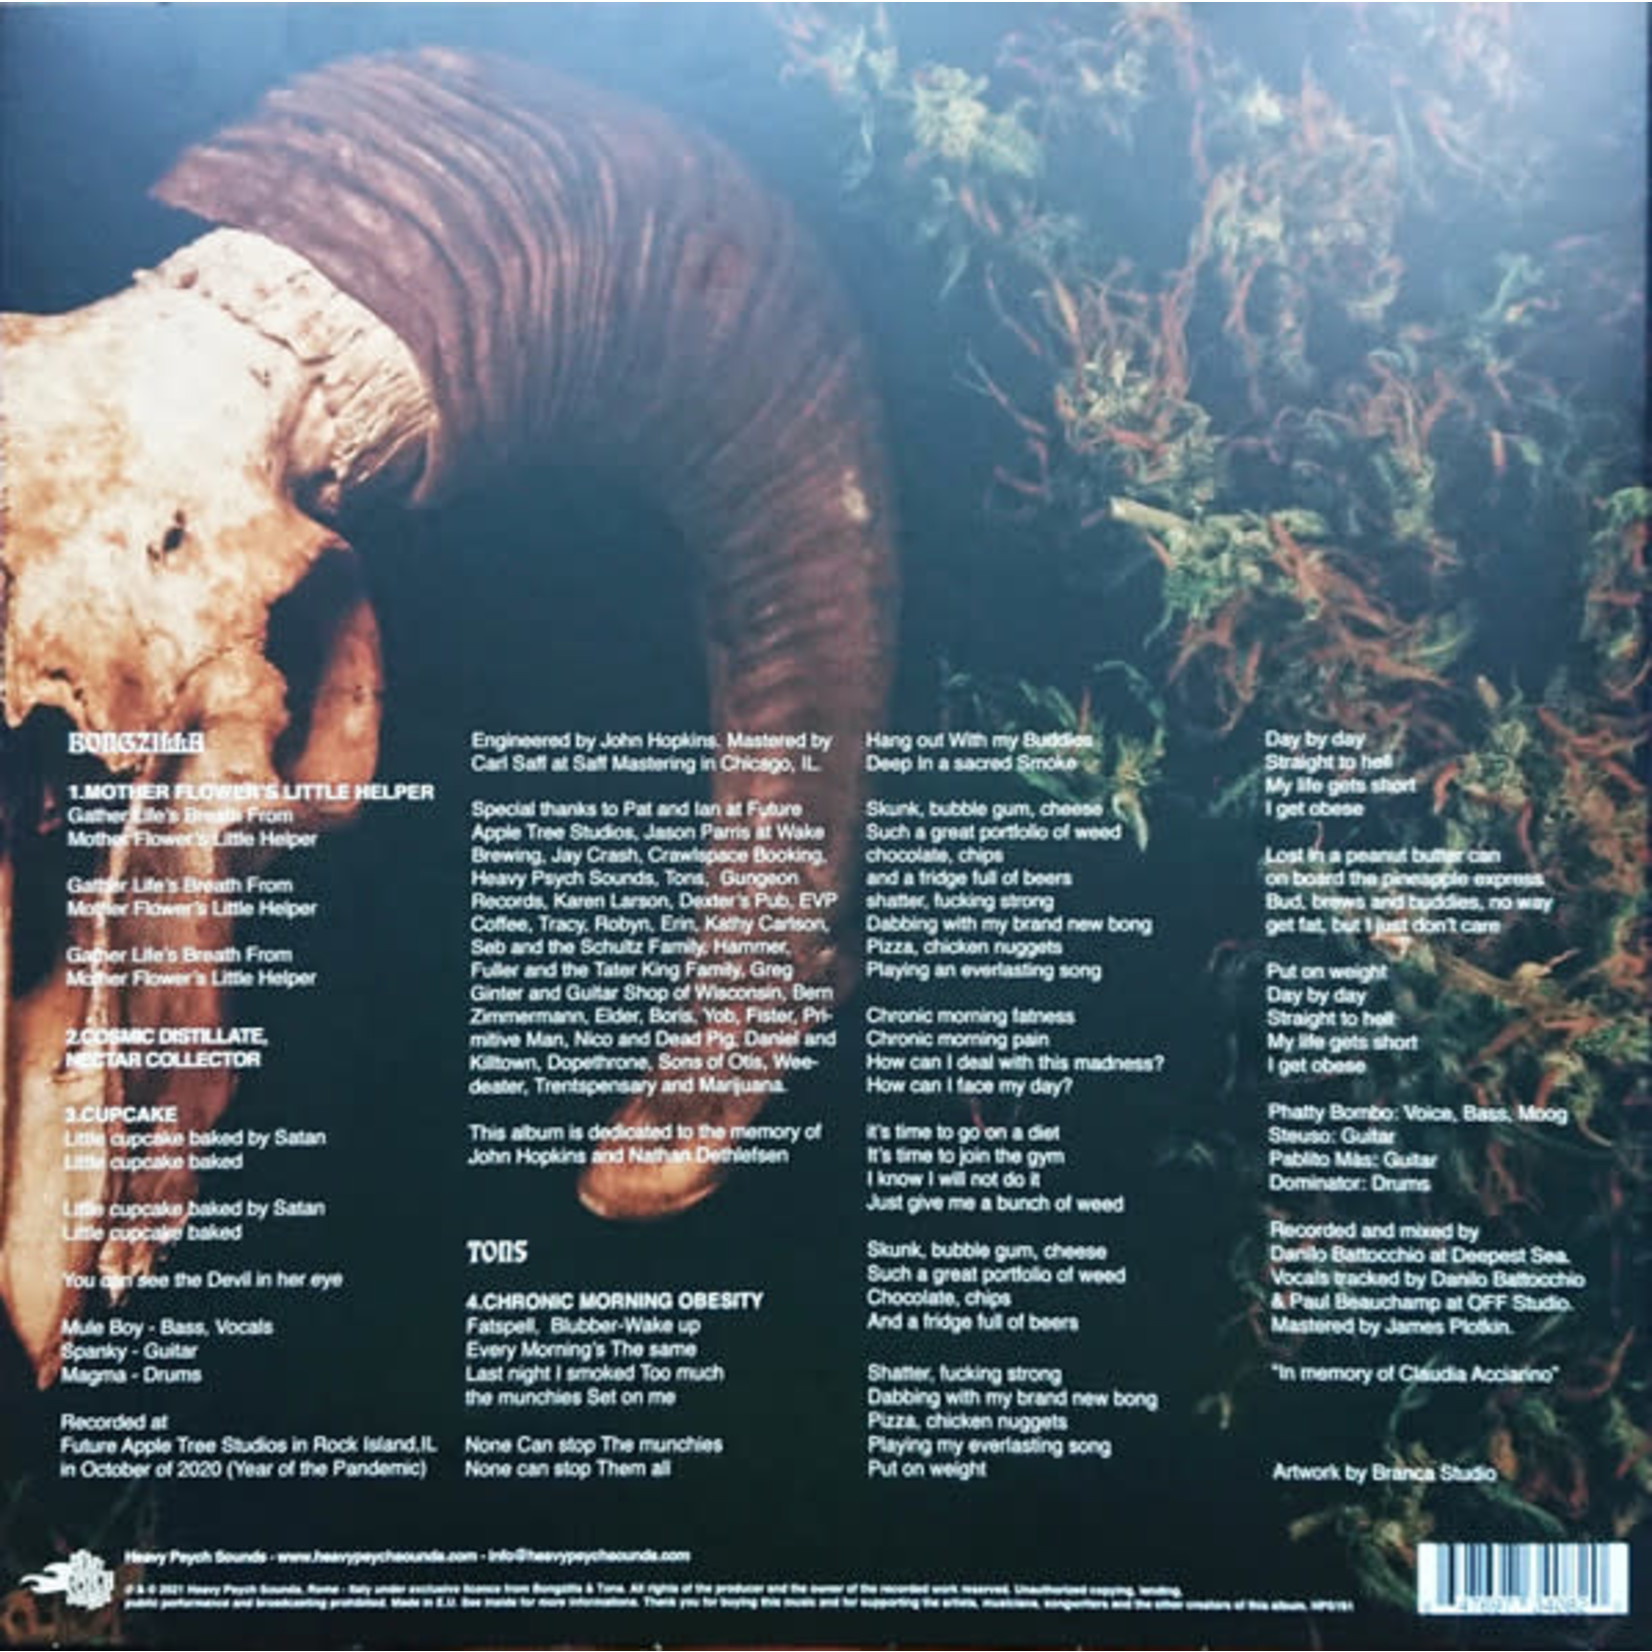 Heavy Psych Sounds Bongzilla & Tons - Doom Sessions Vol. 4 (LP)